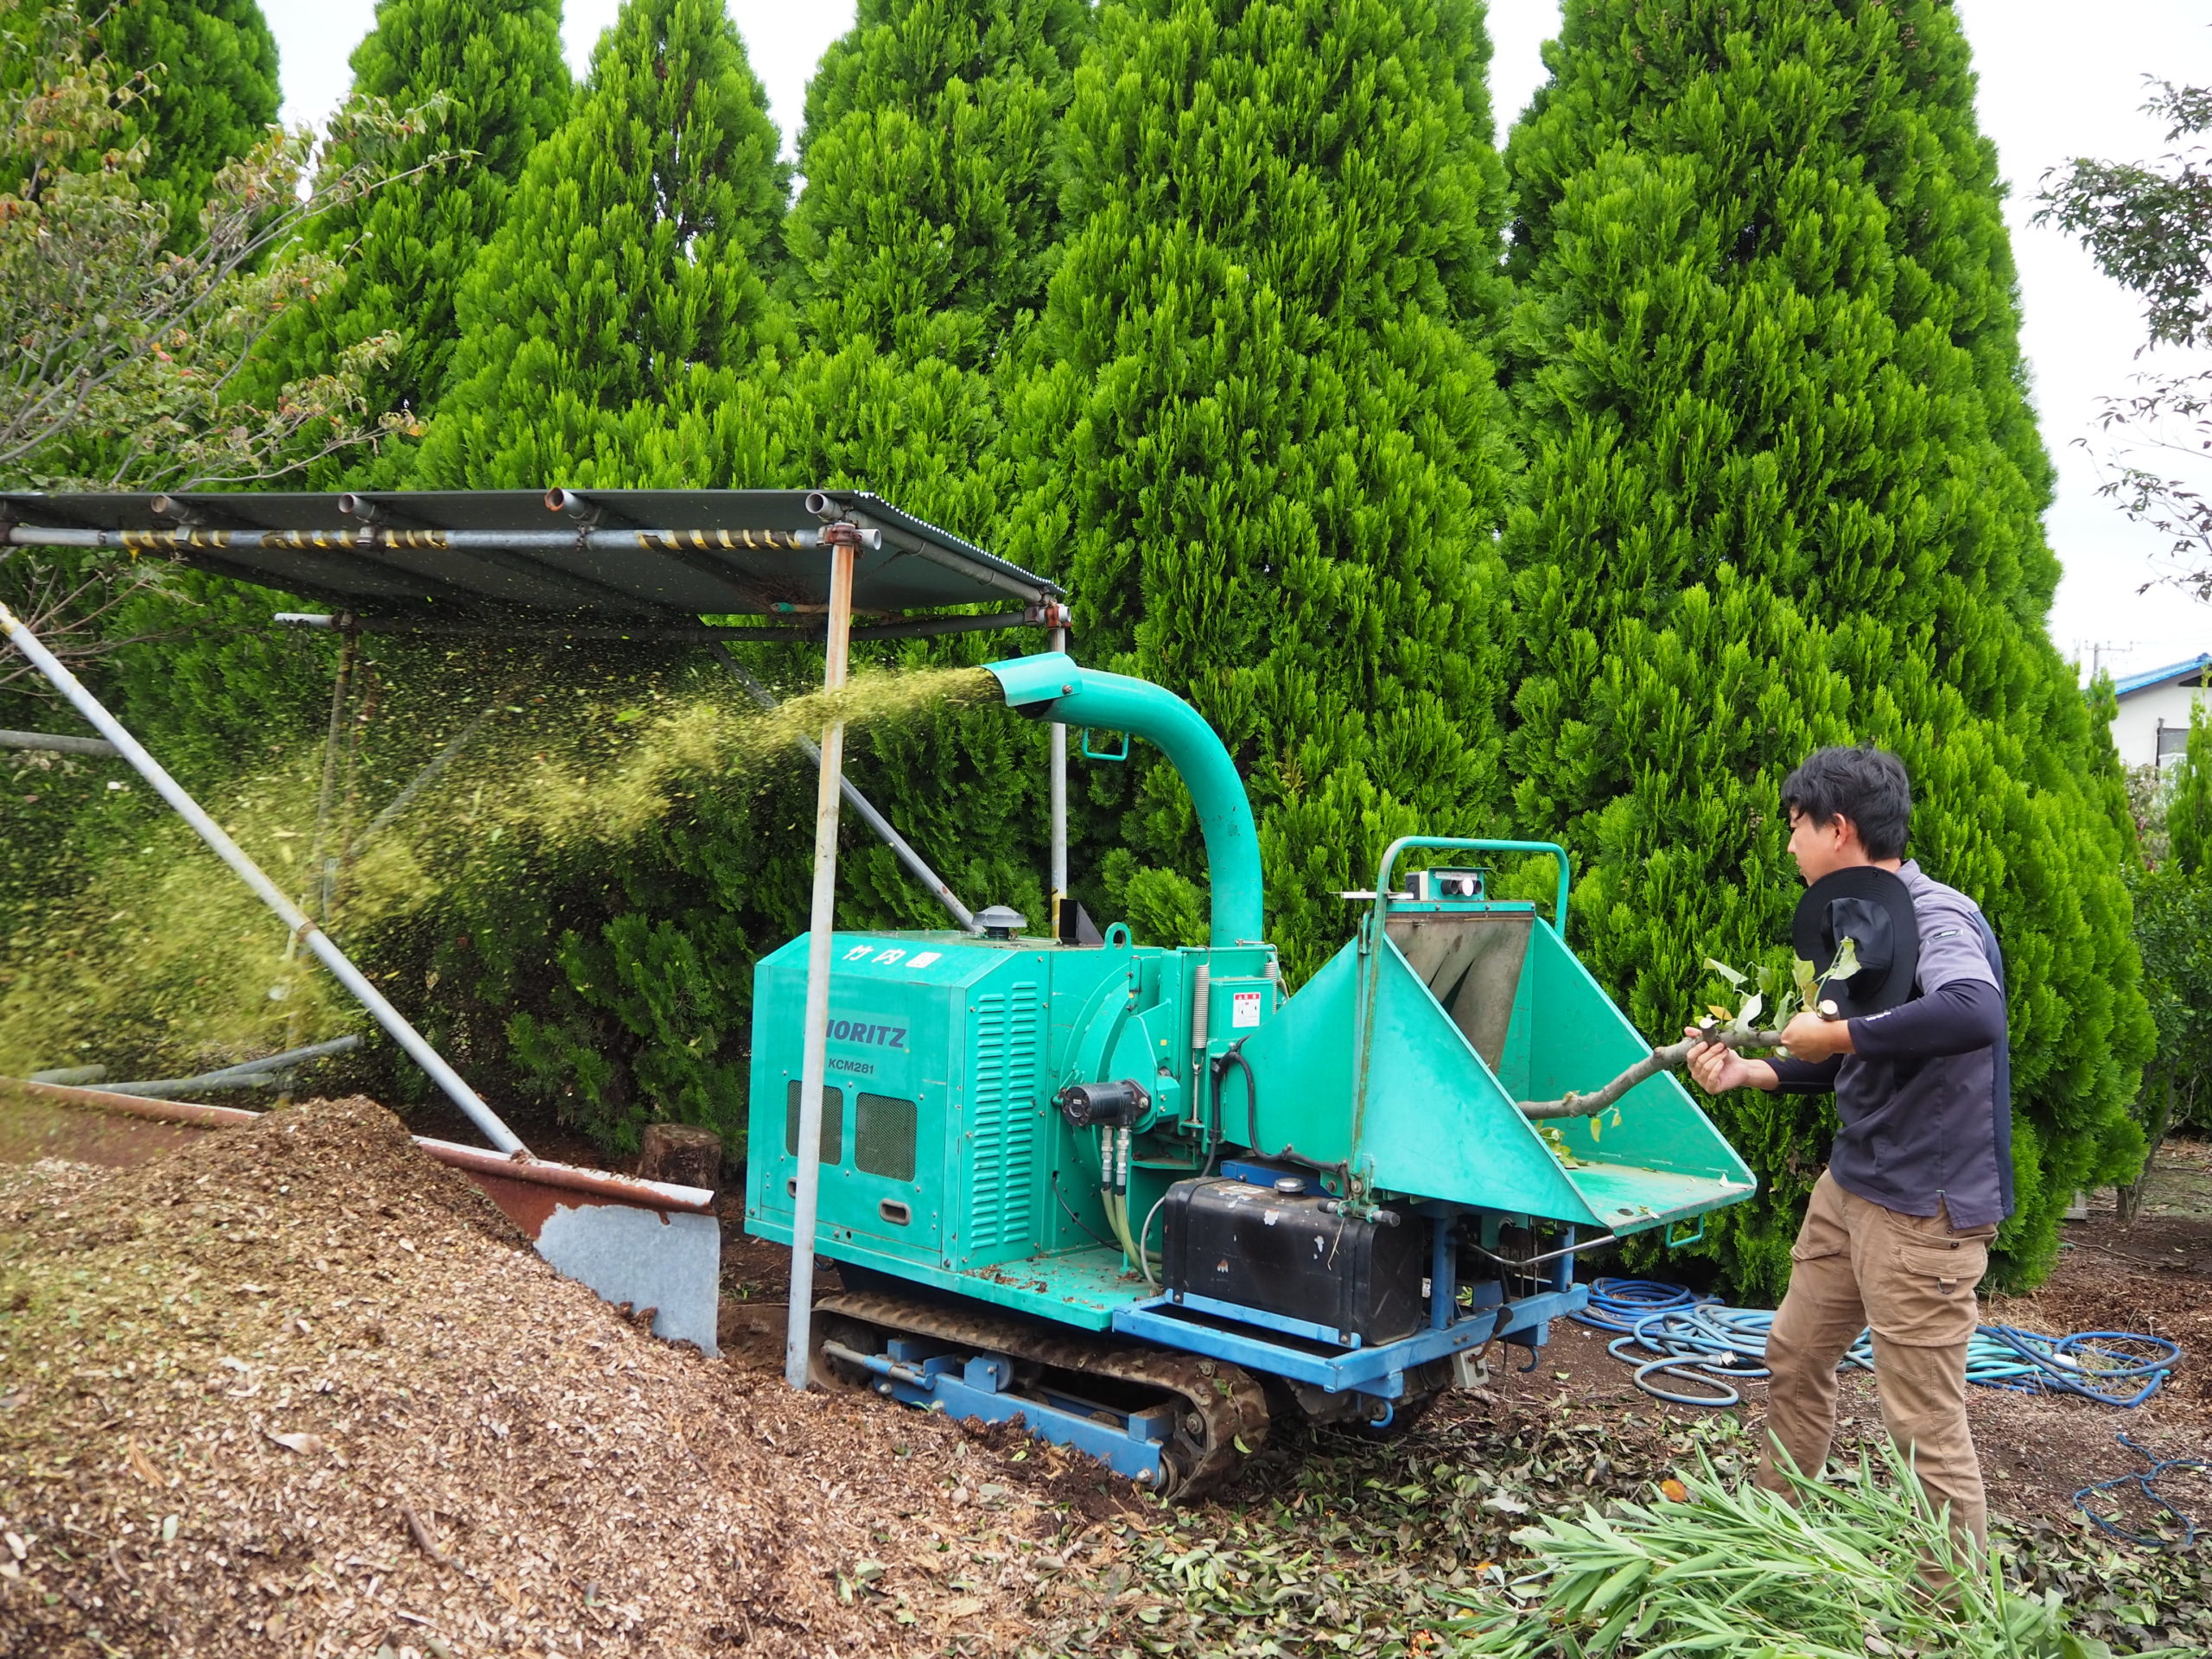 チッパー(大型粉砕機)で畑の植木を堆肥チップにしているところ。大きな音が出るので、近隣に気を遣い、タイミングを見計らって日中短時間で作業します